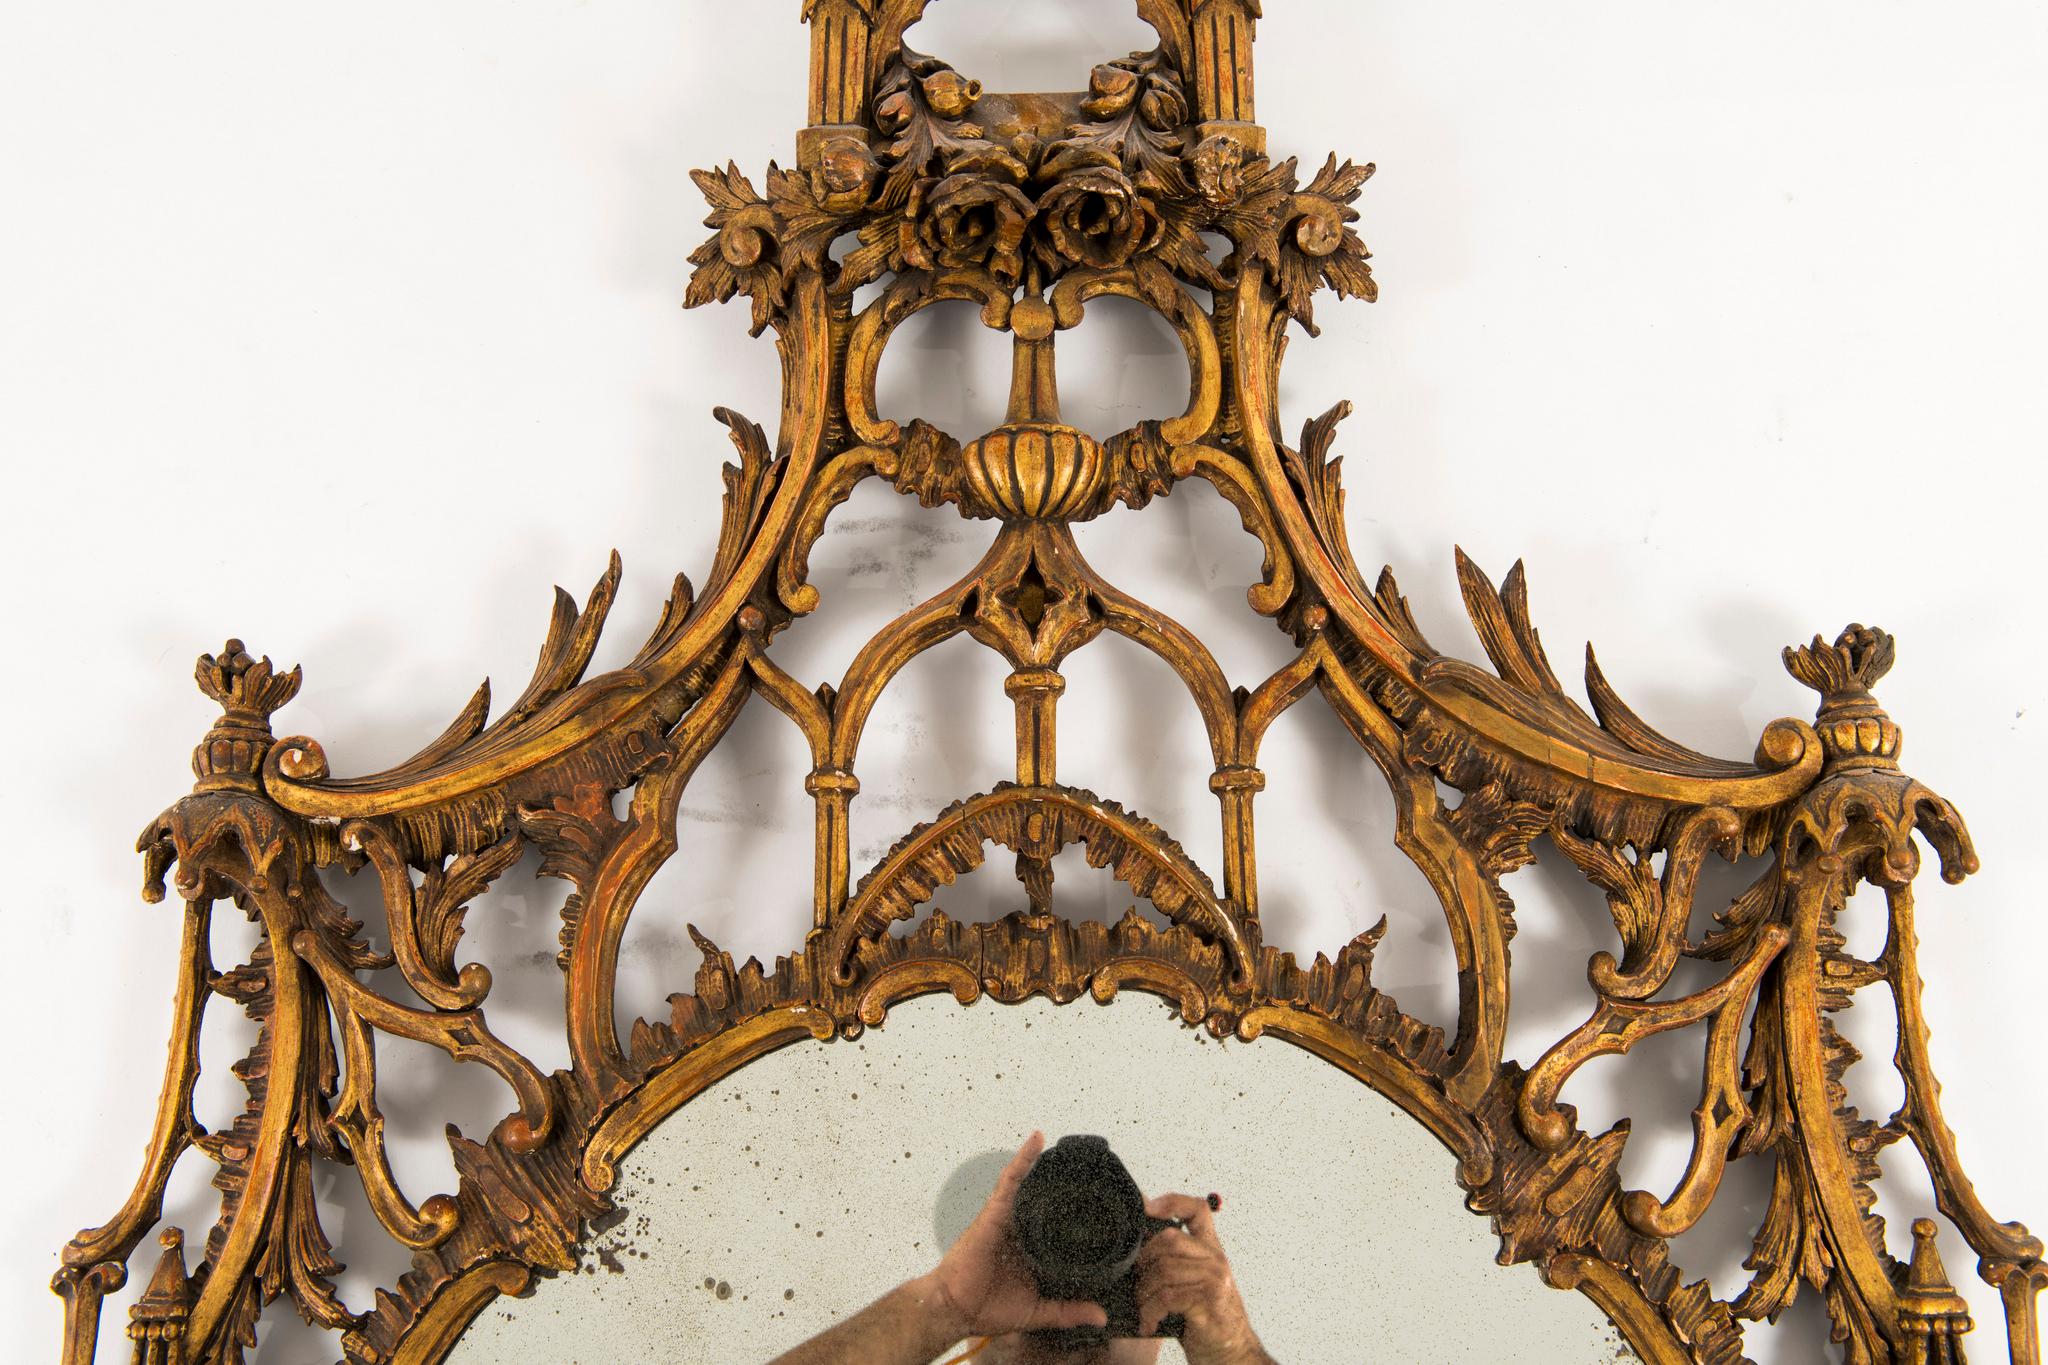 Englischer Chippendale-Vergoldungsspiegel aus dem 19. Jahrhundert. Dieser Spiegel im klassischen Chinoiserie-Stil ist mit einer Mischung aus Rosen, Blattwerk, Laubsägearbeiten, Säulen und Giebeldächern geschmückt.